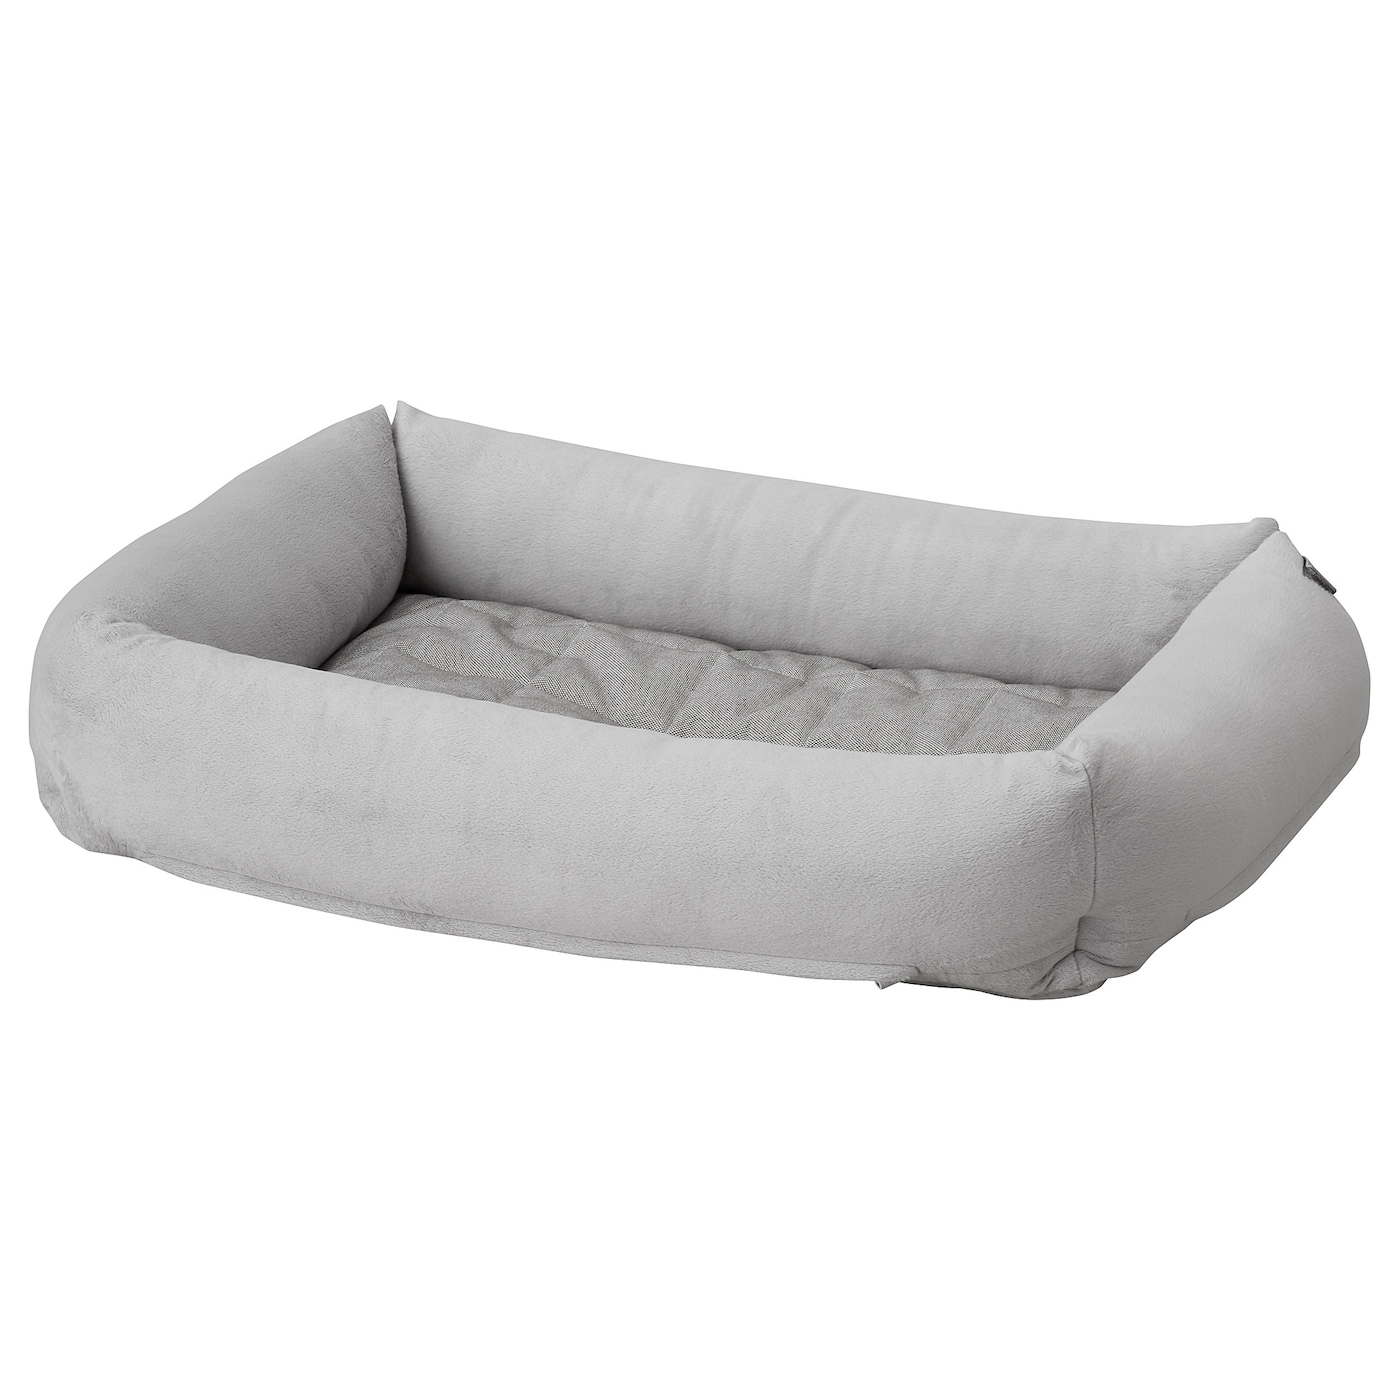 Кровать для собак  - UTSÅDD / UTSАDD IKEA/УТСАДД ИКЕА, серый